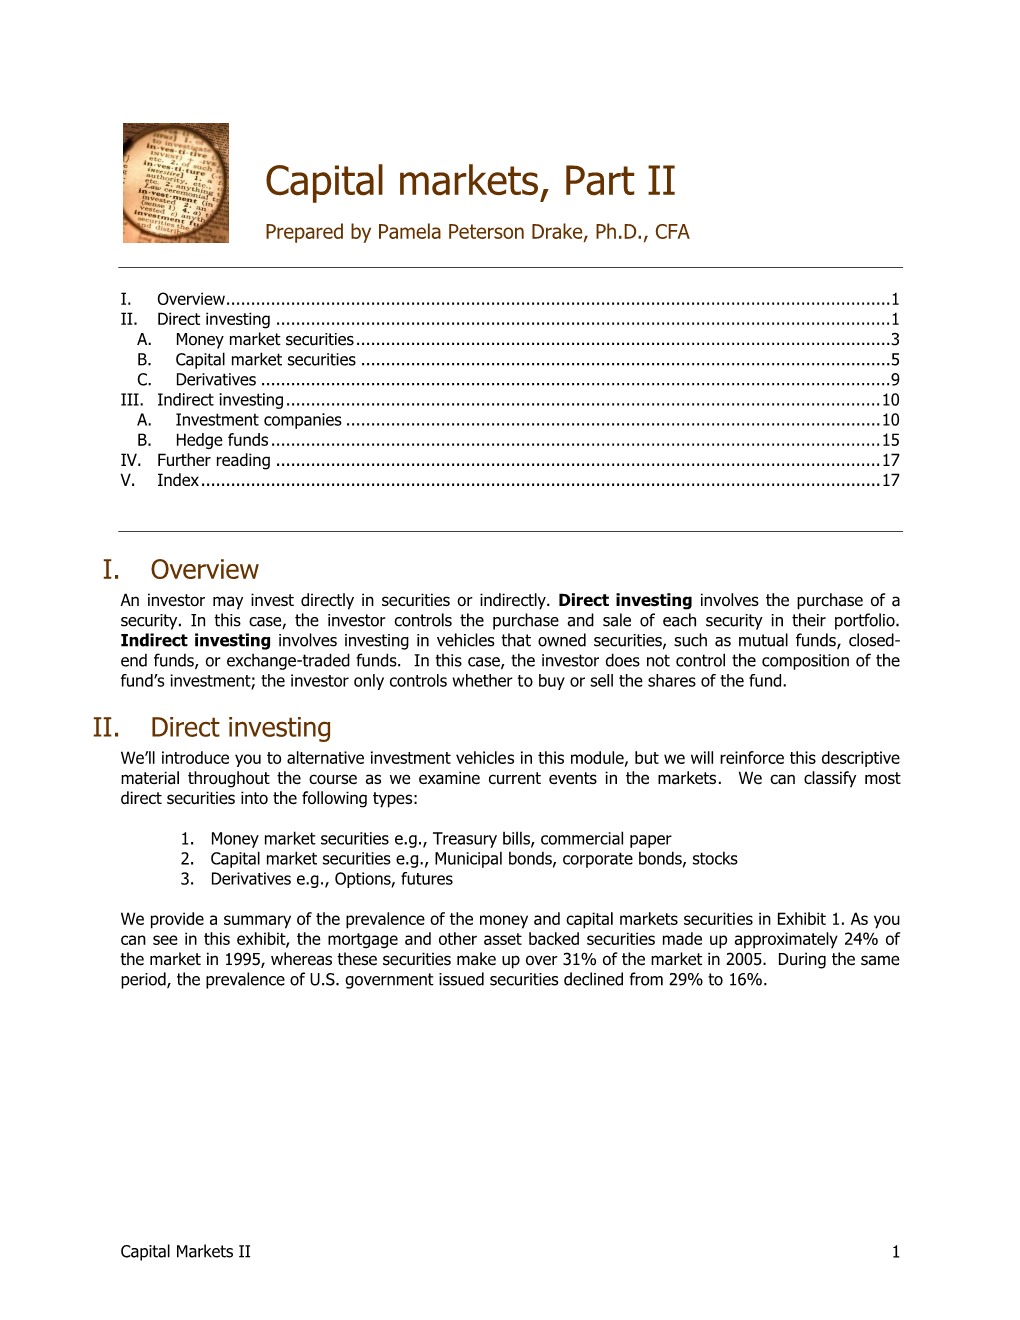 Capital Markets, Part II